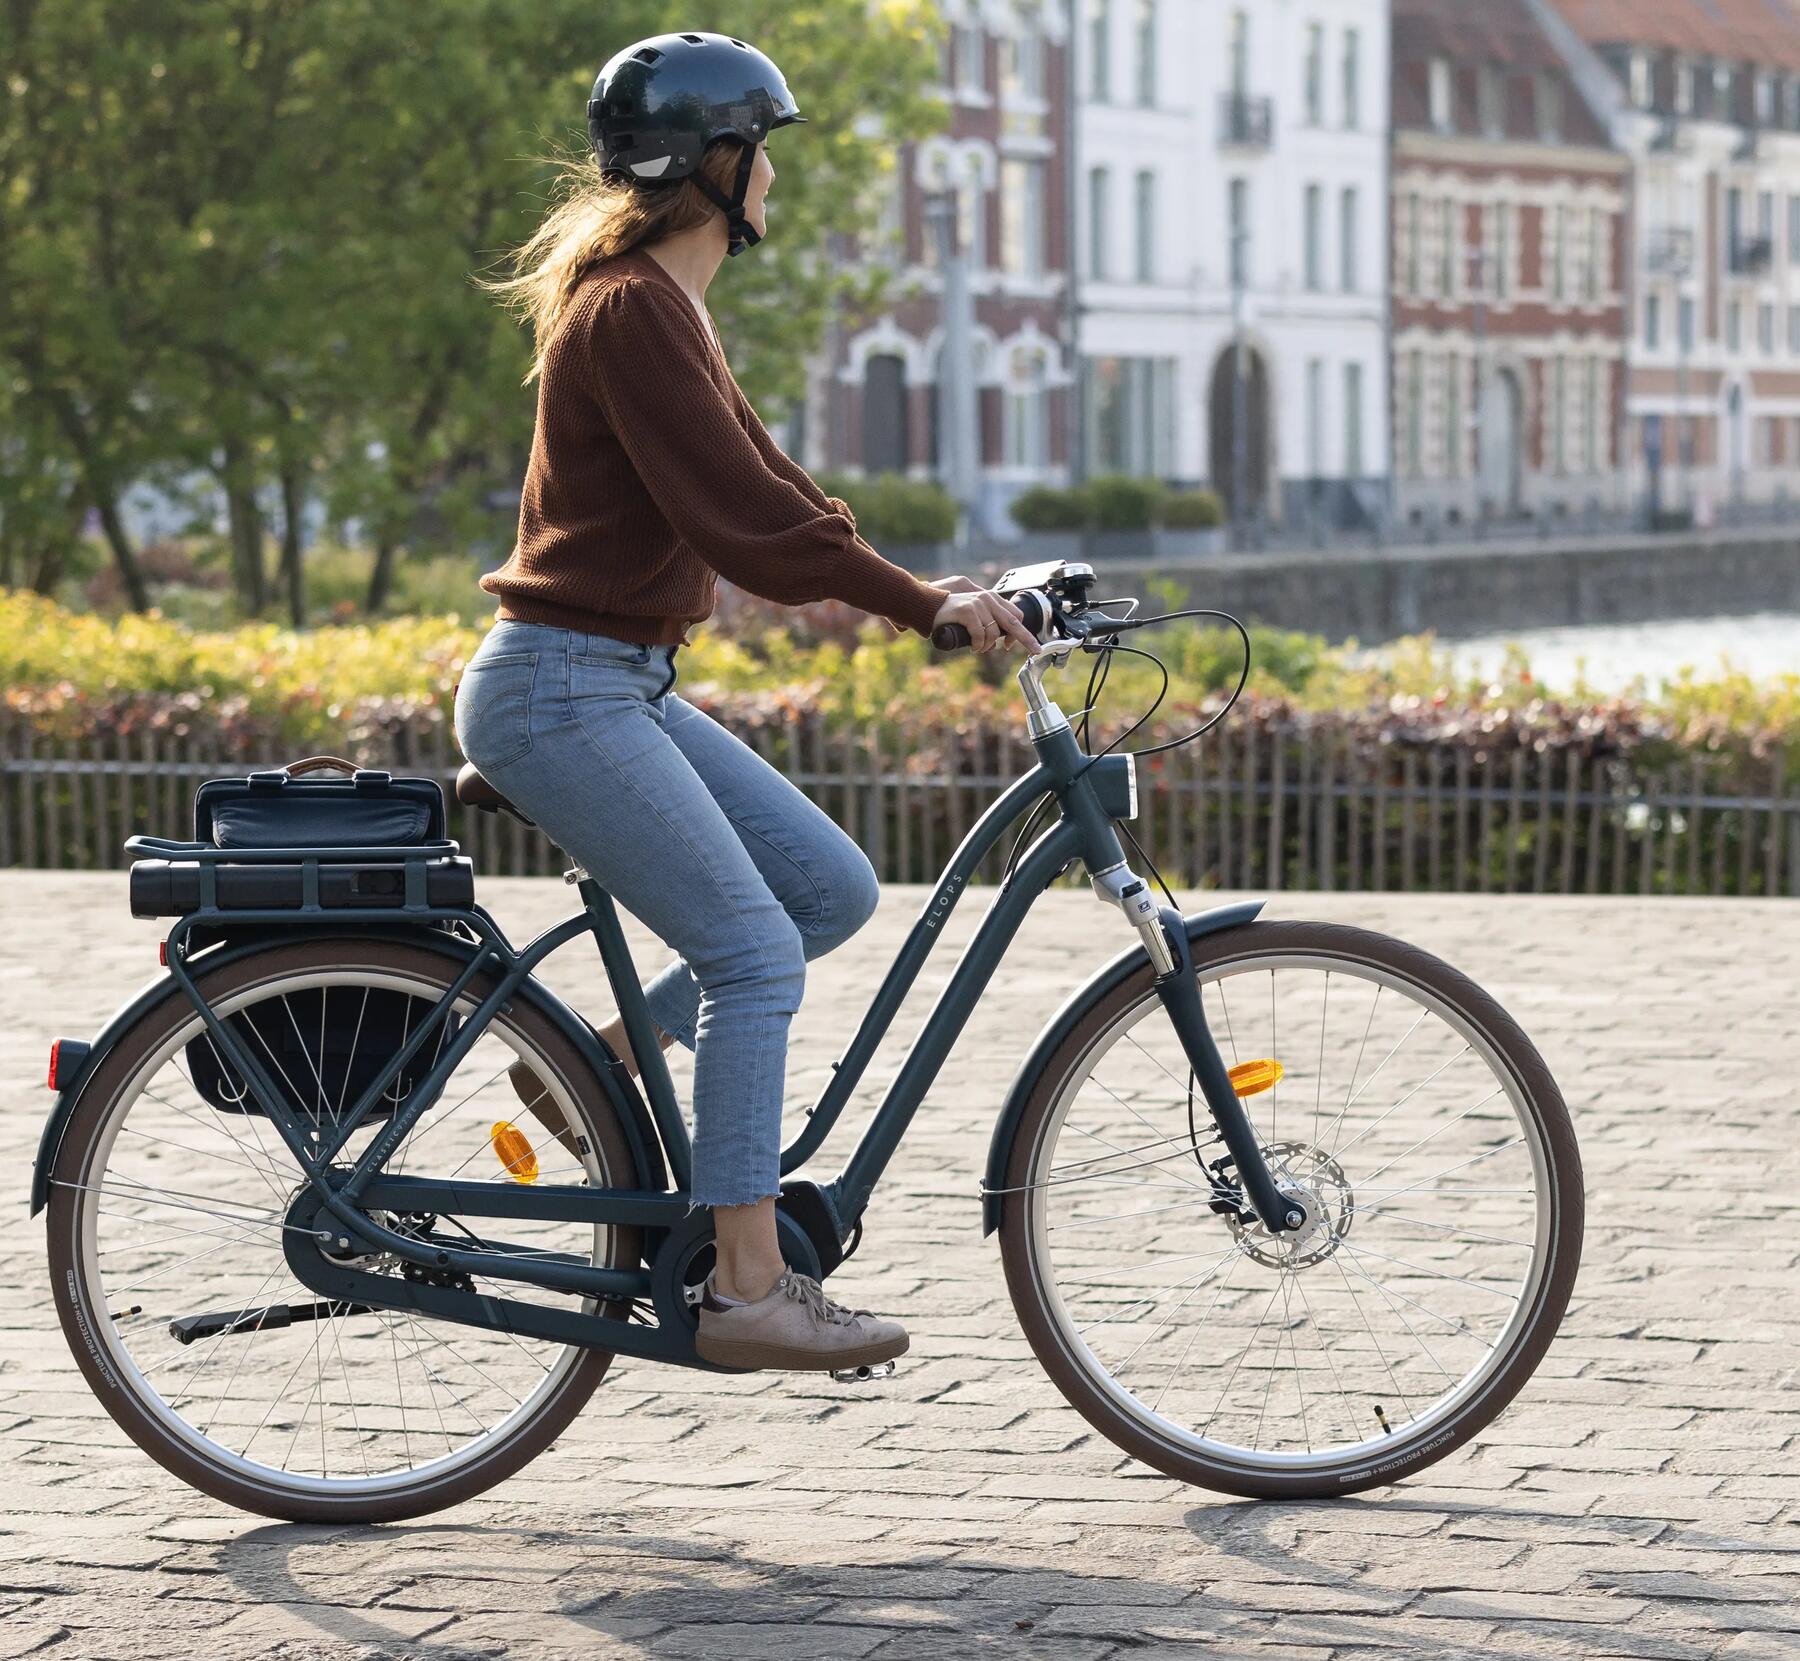 Hogyan lehet optimalizálni az elektromos kerékpár akkumulátorát?